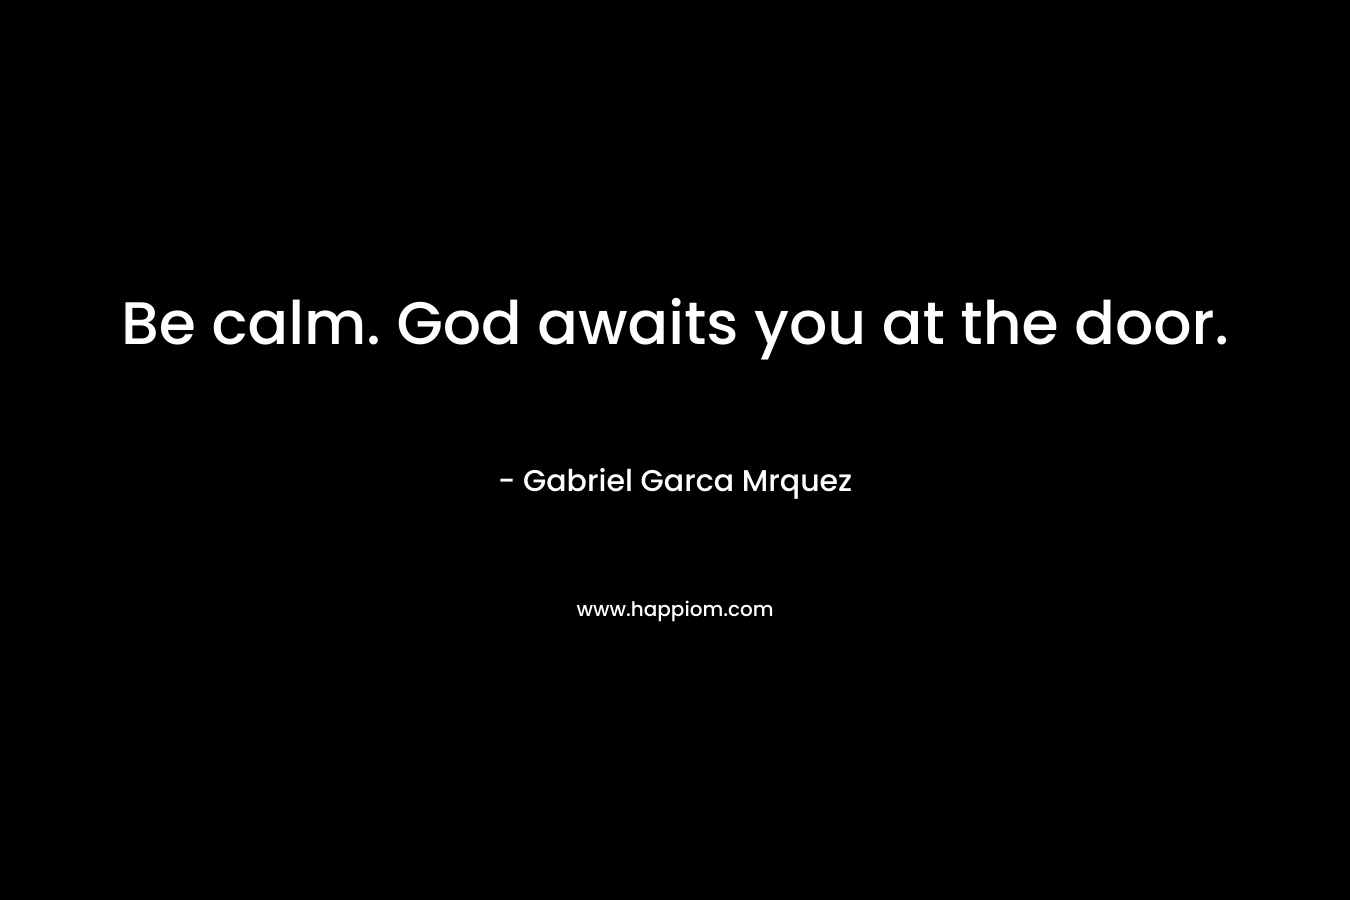 Be calm. God awaits you at the door.